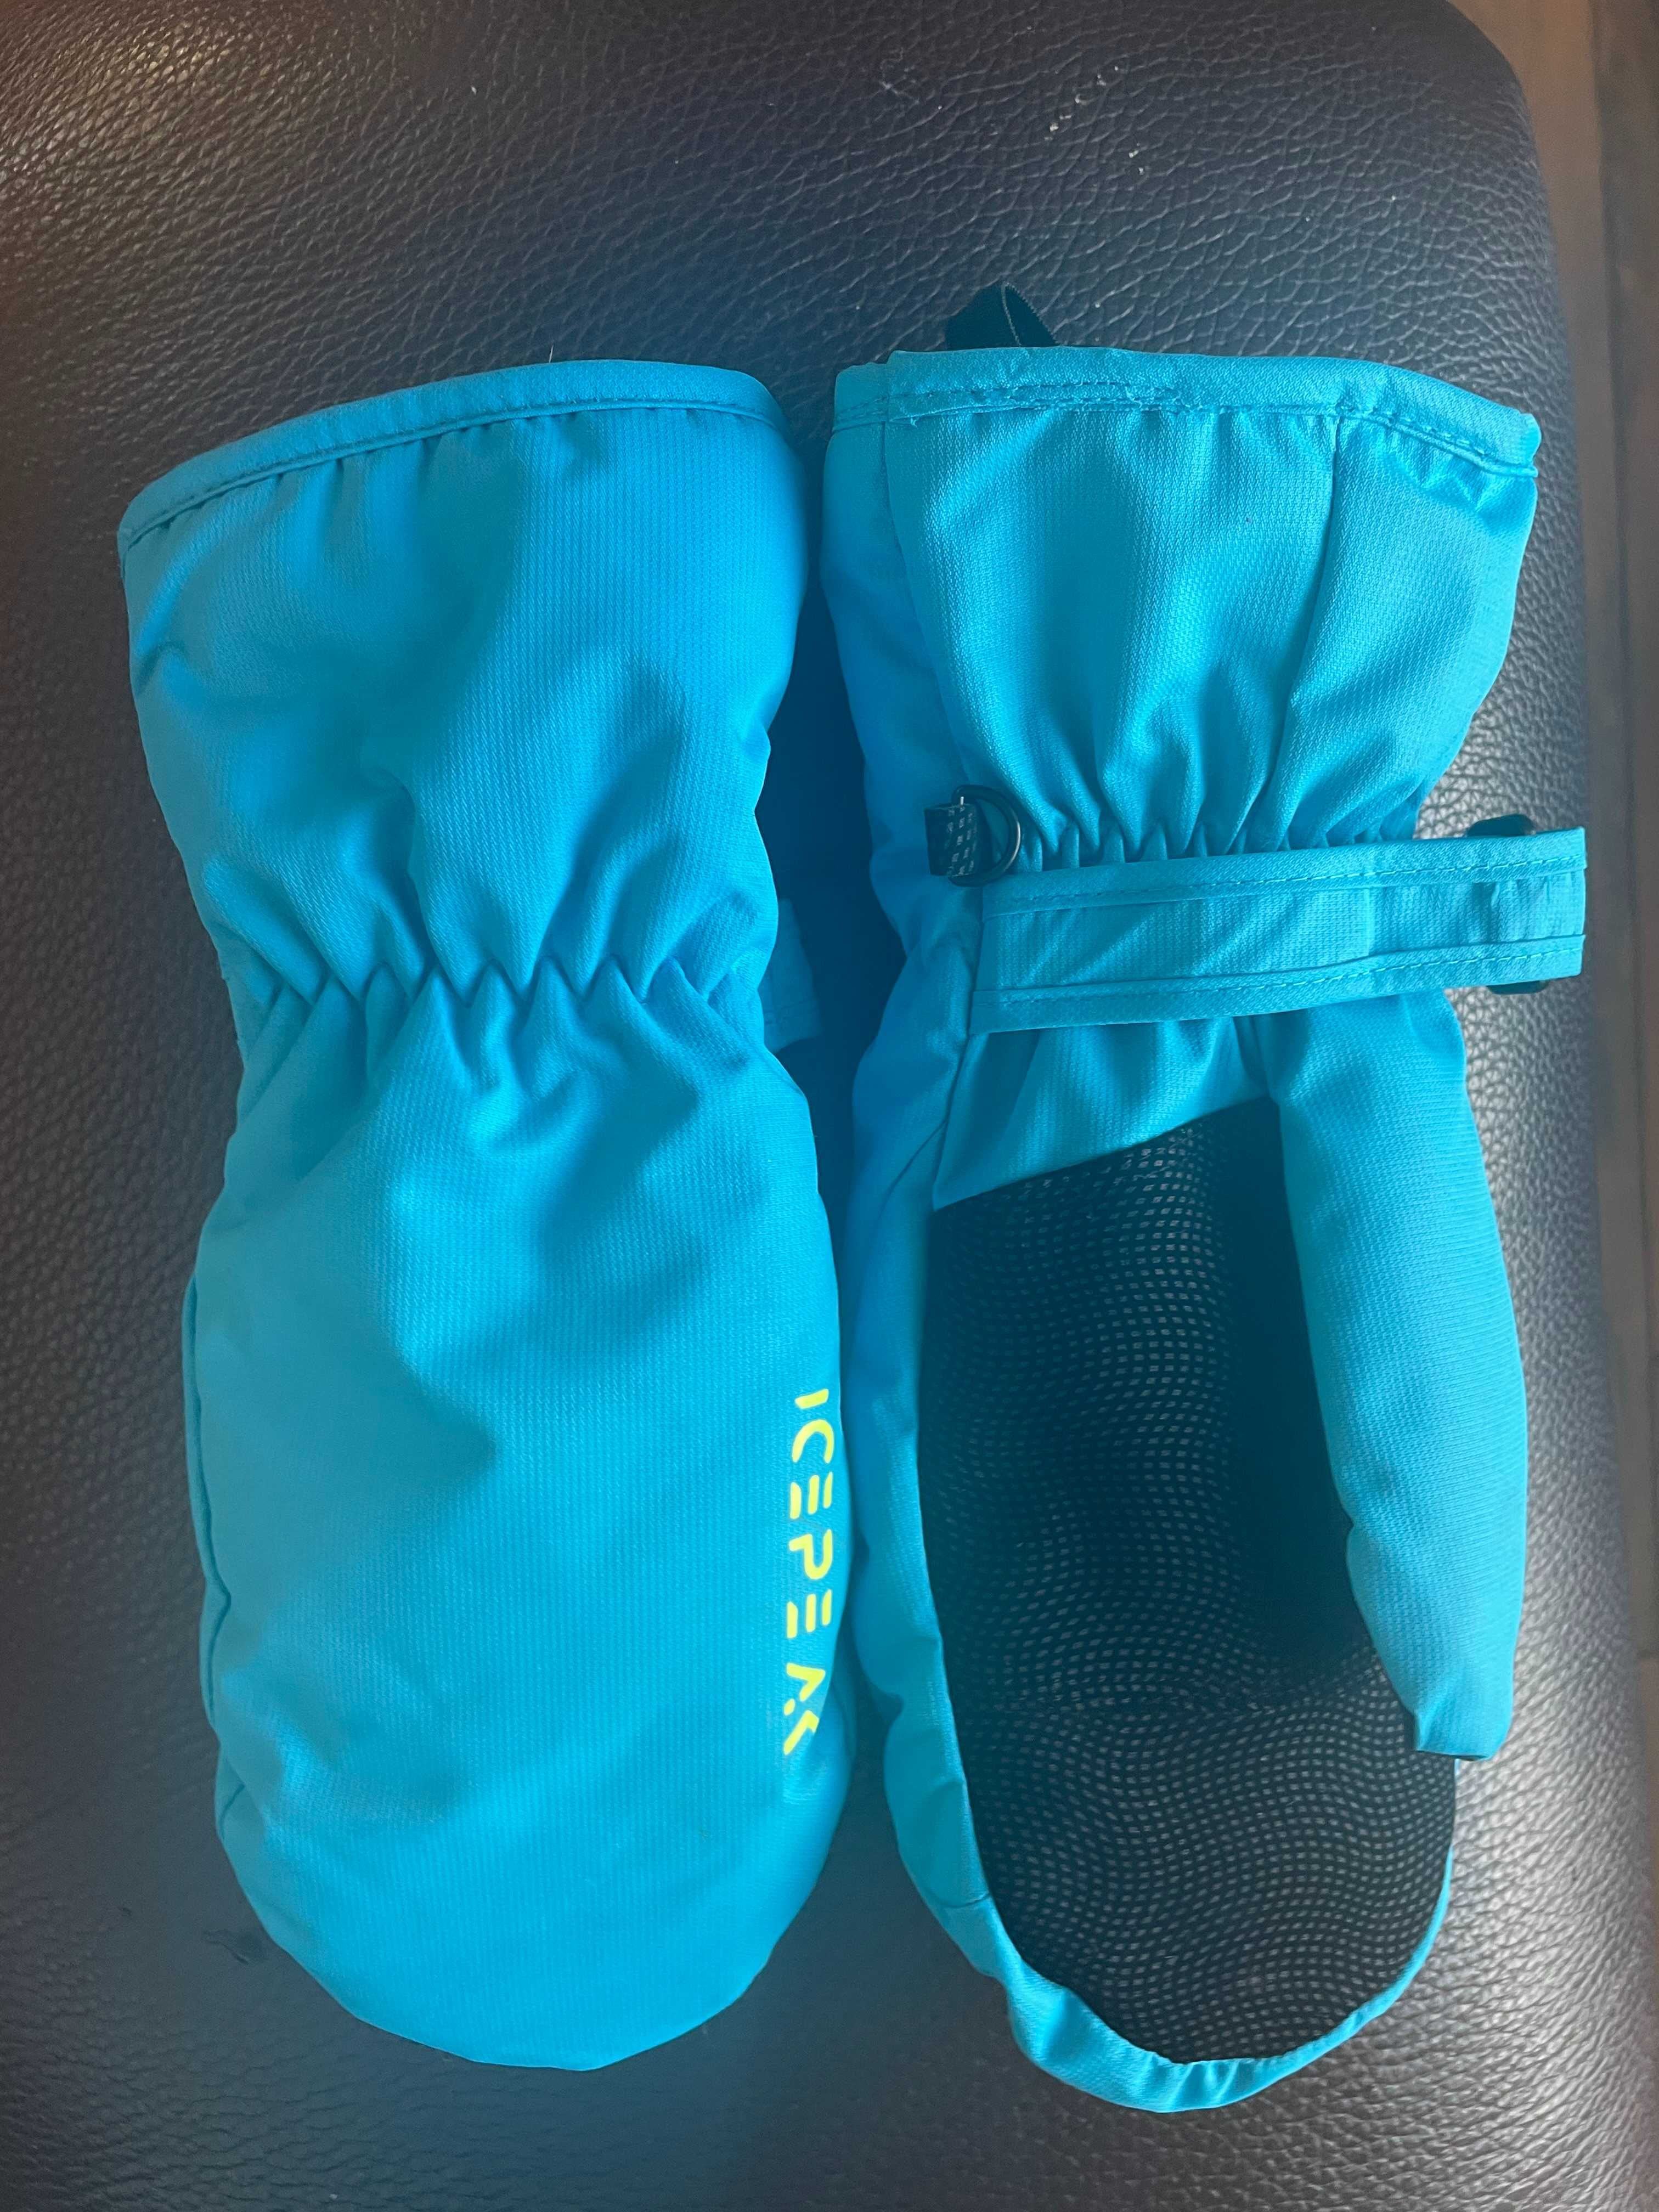 сини ски/скейтборд ръкавици  размер L 12-13 години